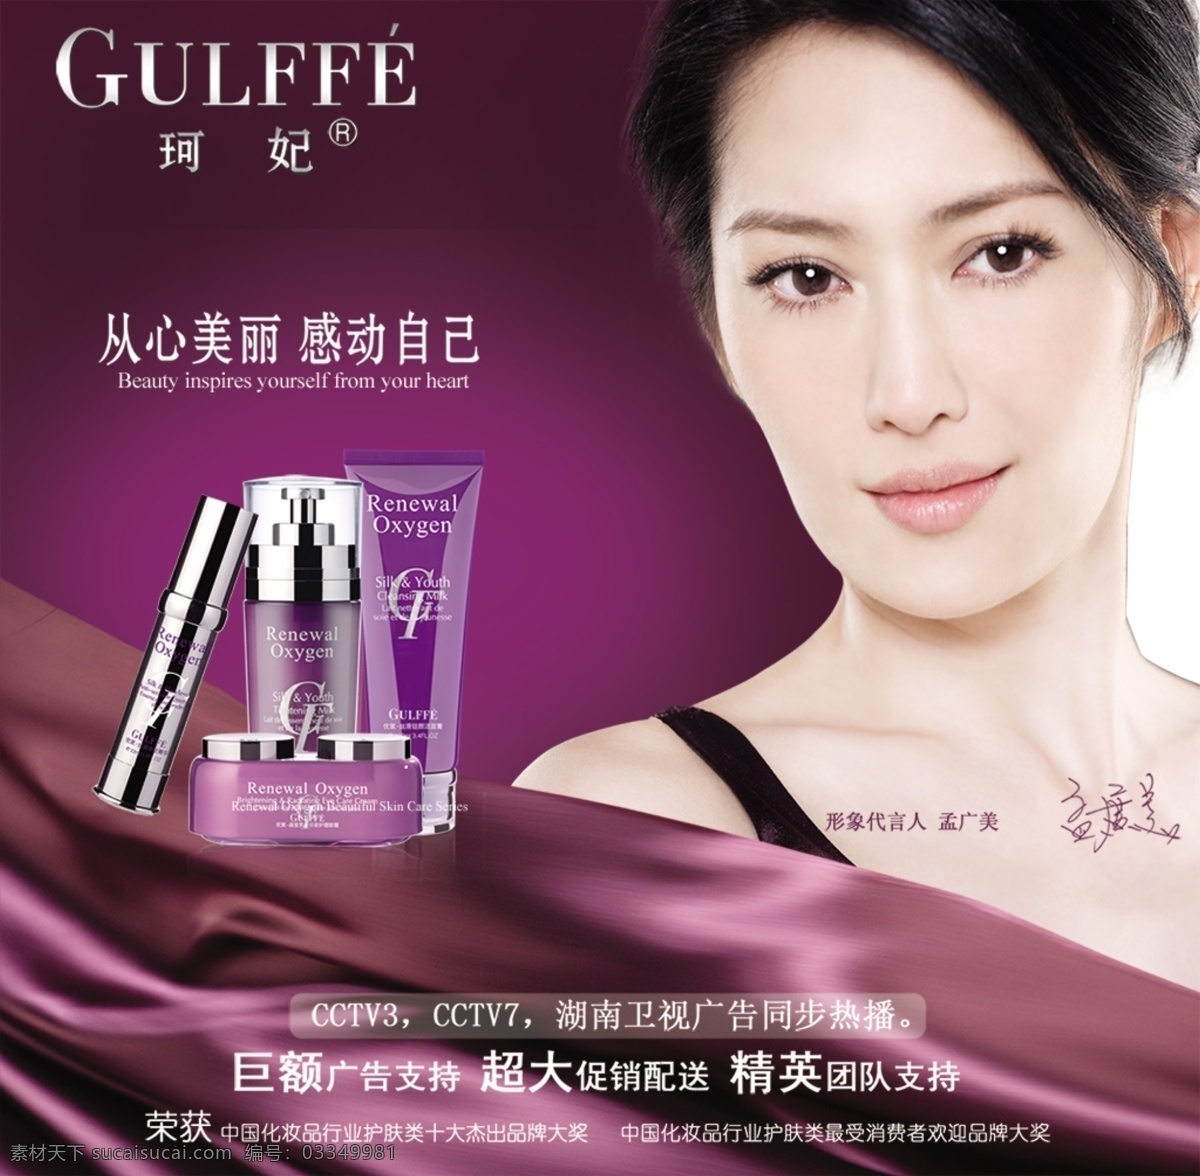 商业 海报 化妆品 女性用品 商业海报 化妆品海报 美女图片 明星代言广告 海报素材 广告 紫色